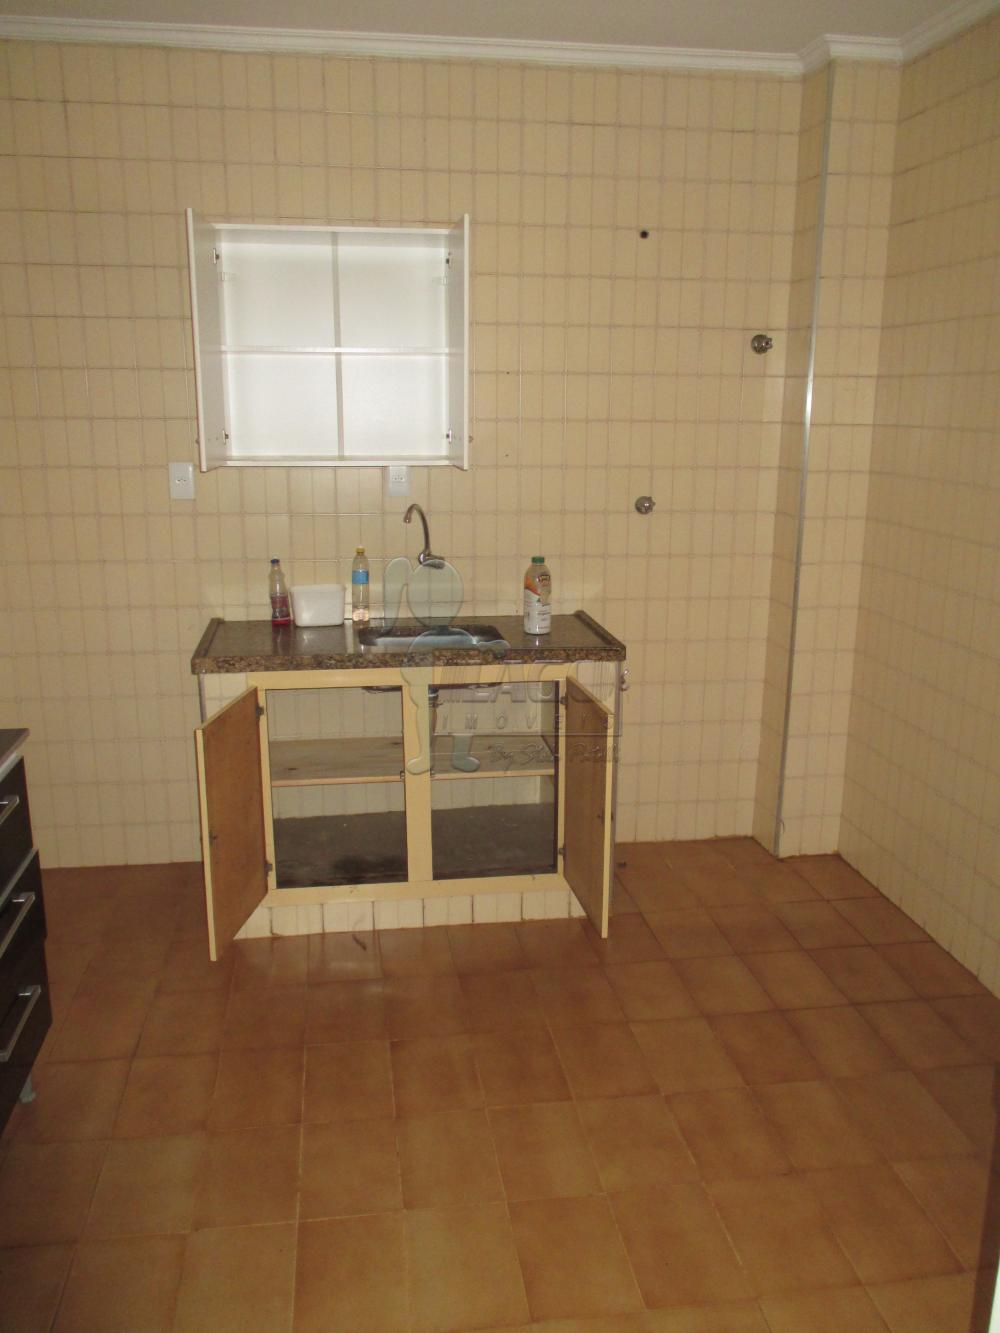 Comprar Apartamentos / Padrão em Ribeirão Preto R$ 140.000,00 - Foto 5